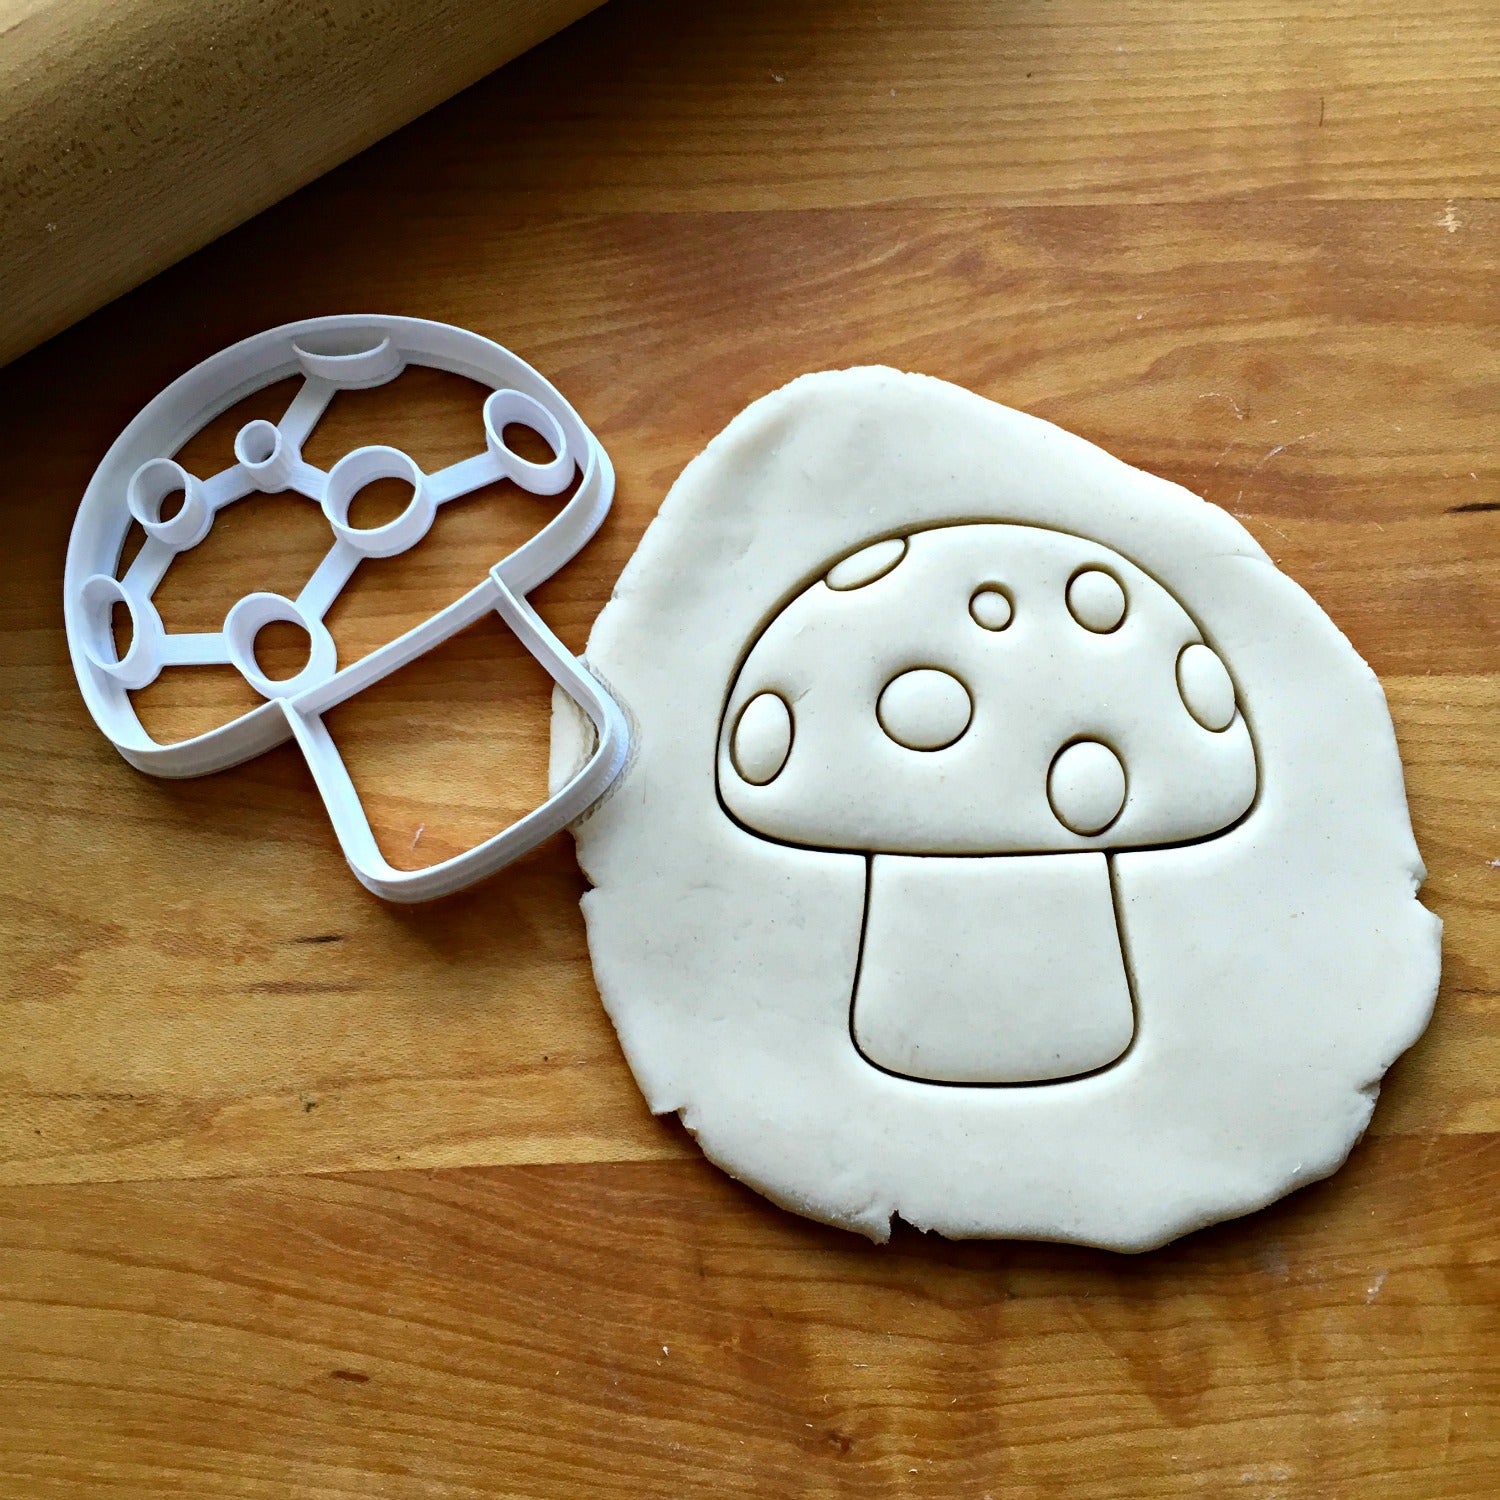 Mushroom Cookie Cutter – The Flour Box